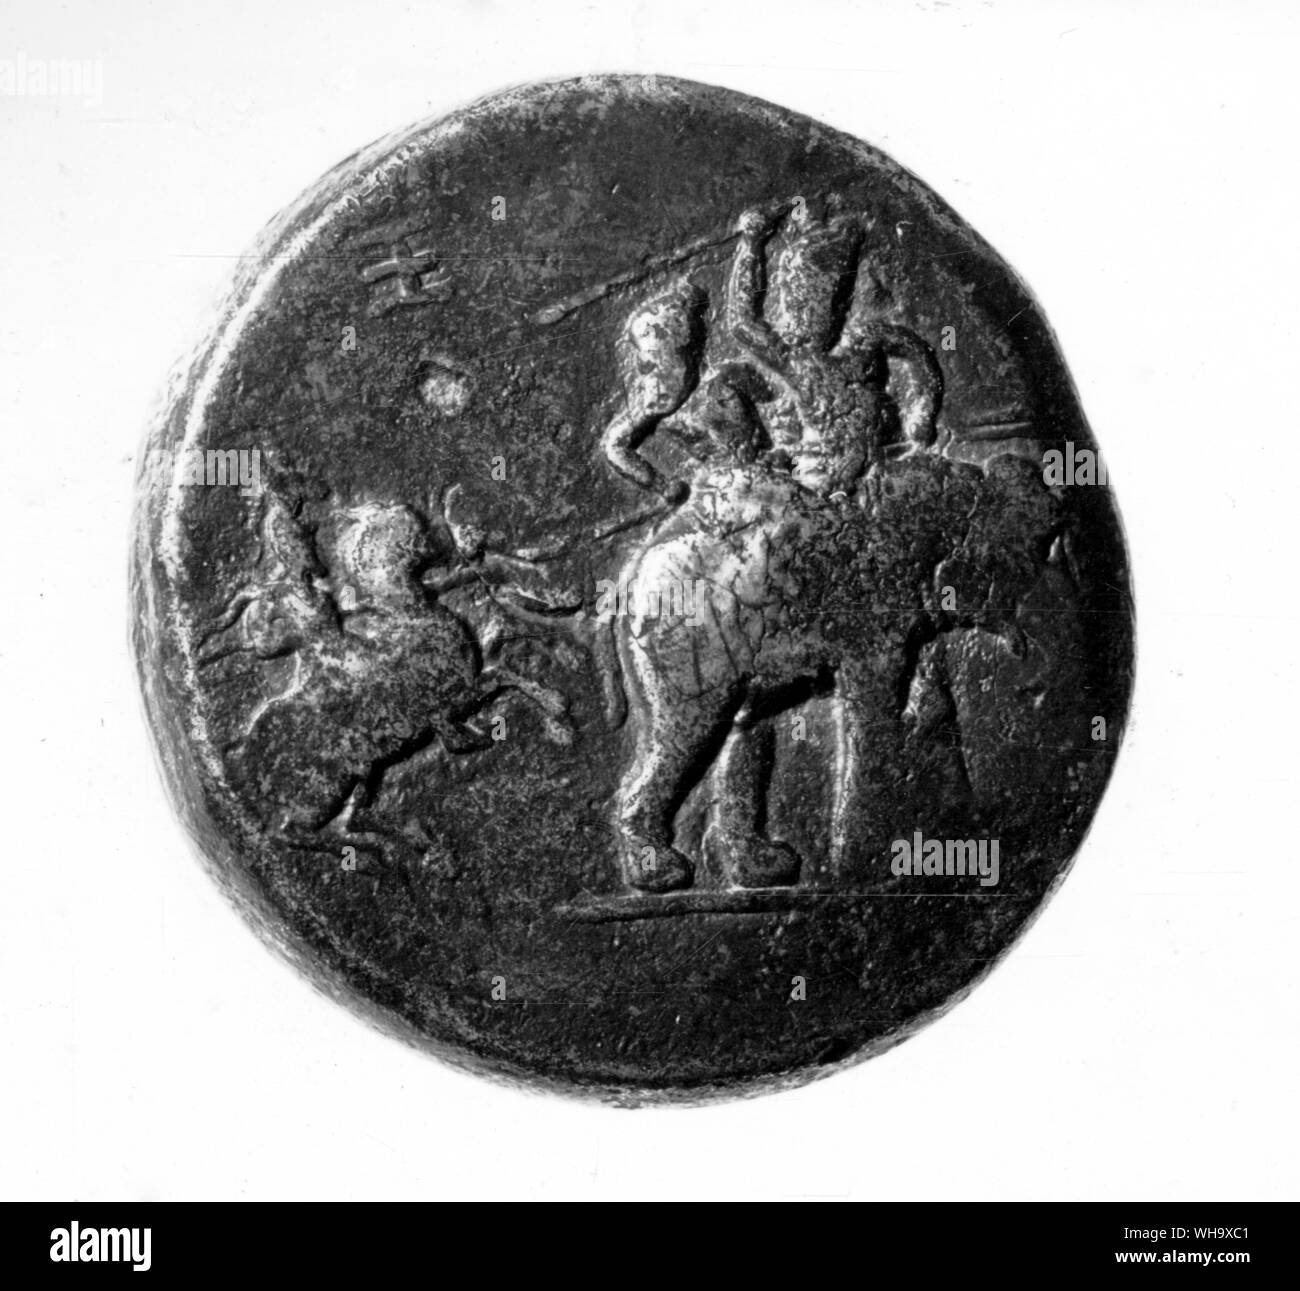 Une pièce de monnaie commémorative de l'expédition d'Alexandre au Pendjab et son defet de Porus. Casque d'Alexandre est modelé sur le couvre-chef royal perse, l'kyrbasia ont atteint un sommet, avec plume ajoutée Banque D'Images